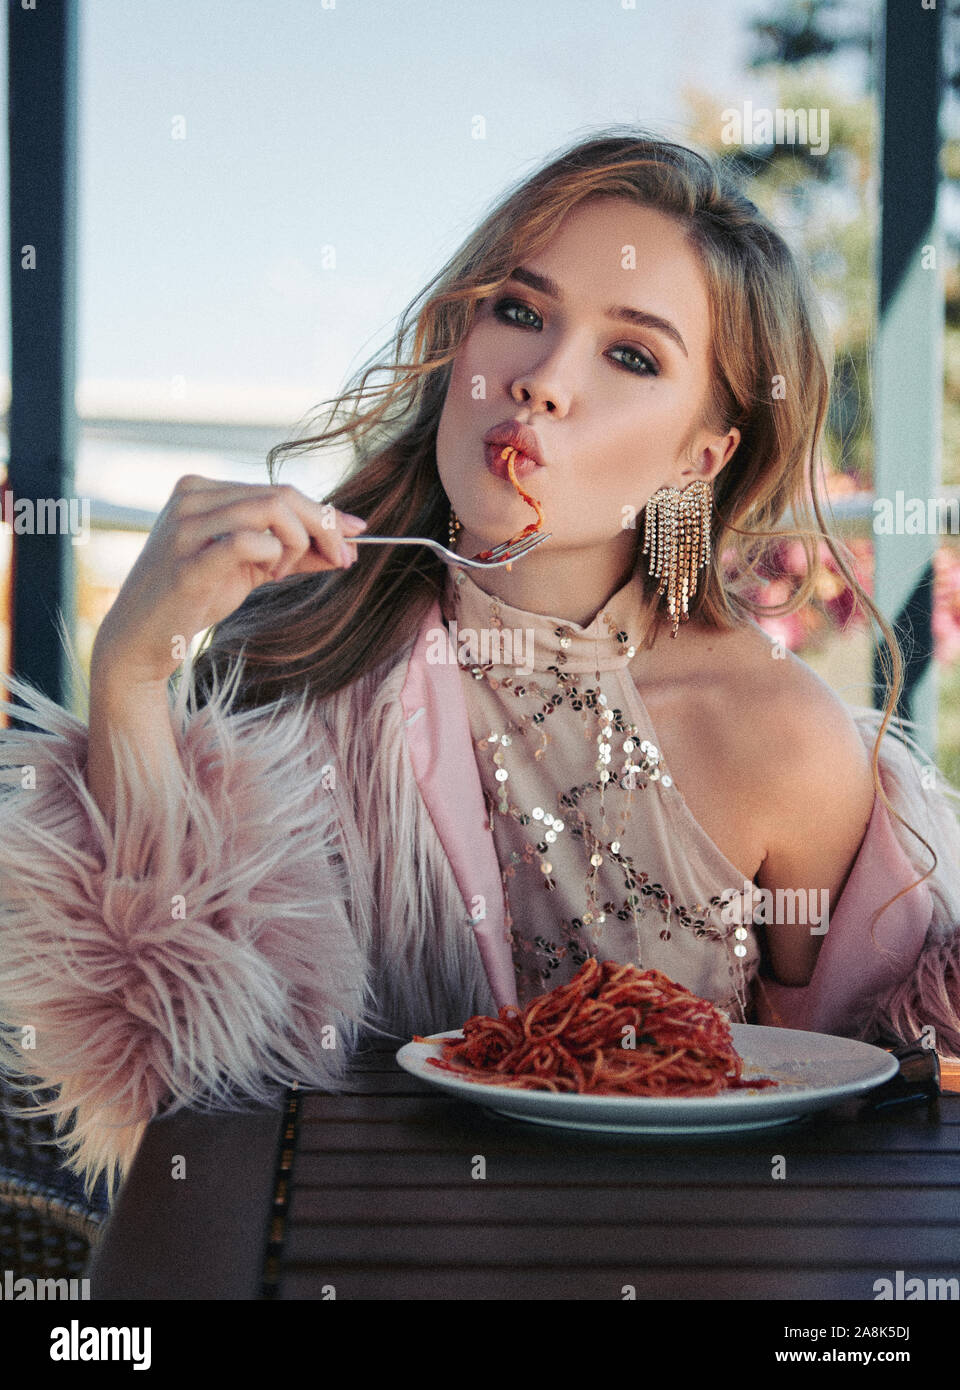 Süße Mädchen in einem Restaurant sitzen und essen Nudeln (Spaghetti). Portrait von stilvollen junge Frau im Cafe, das Tragen von Kleidung und Pelzmantel. Filmkorn Wirkung Stockfoto